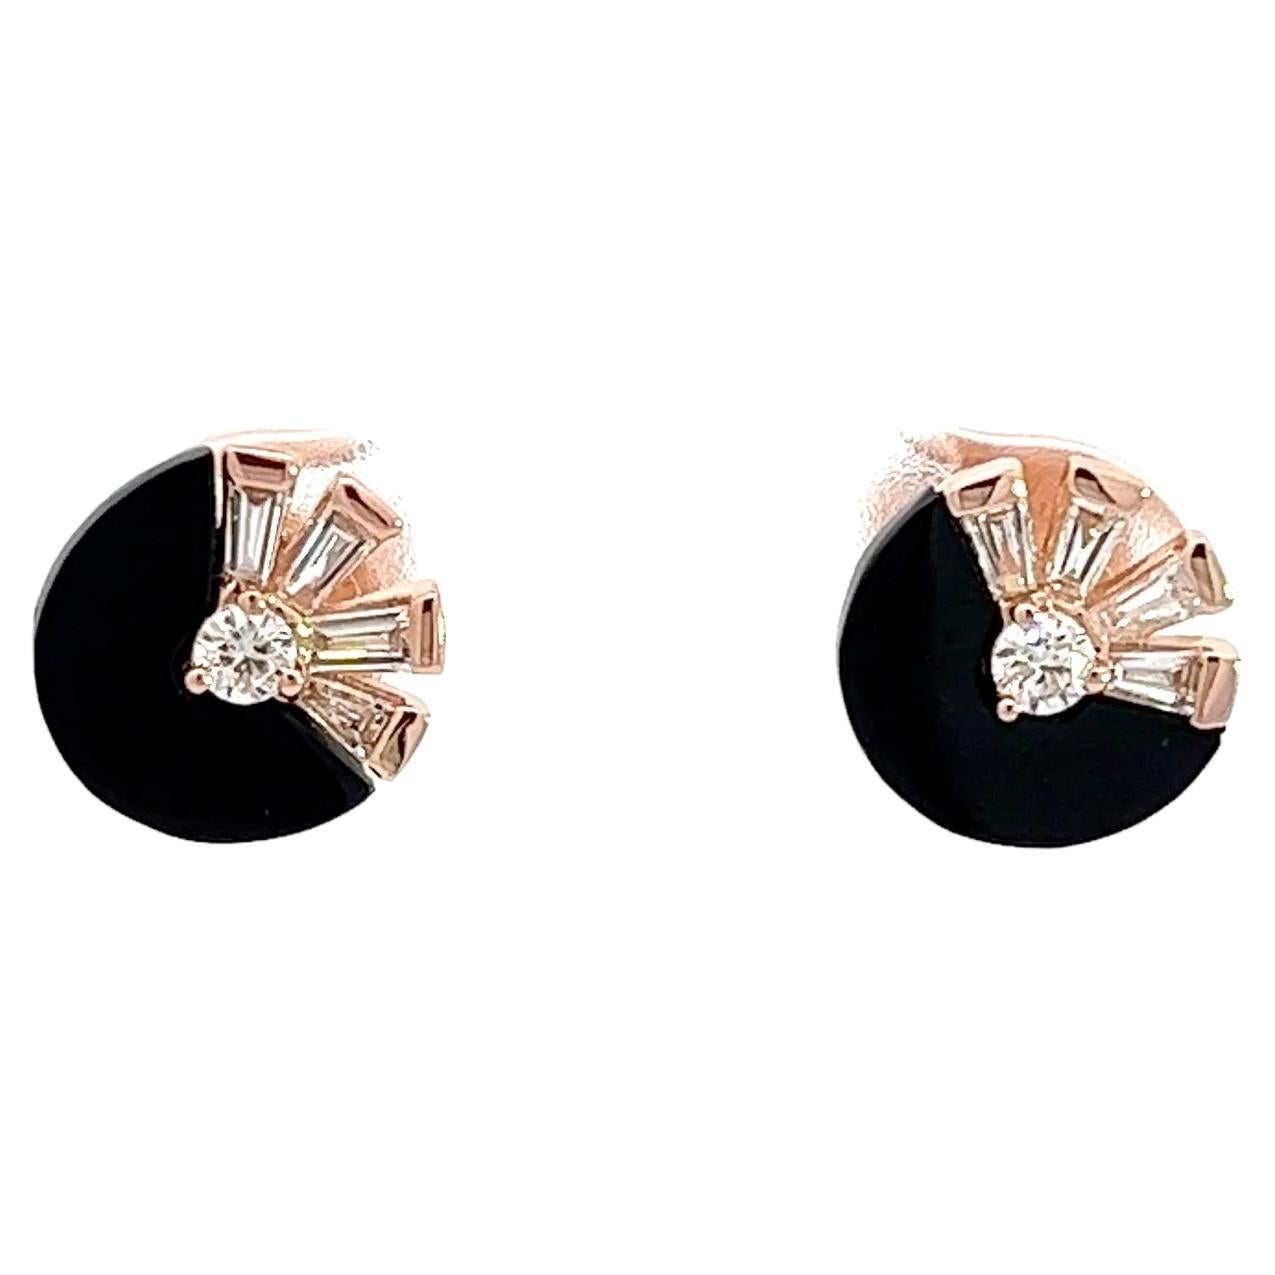 Boucles d'oreilles en or rose 14K (collier et bague assortis disponibles)

Diamants 1